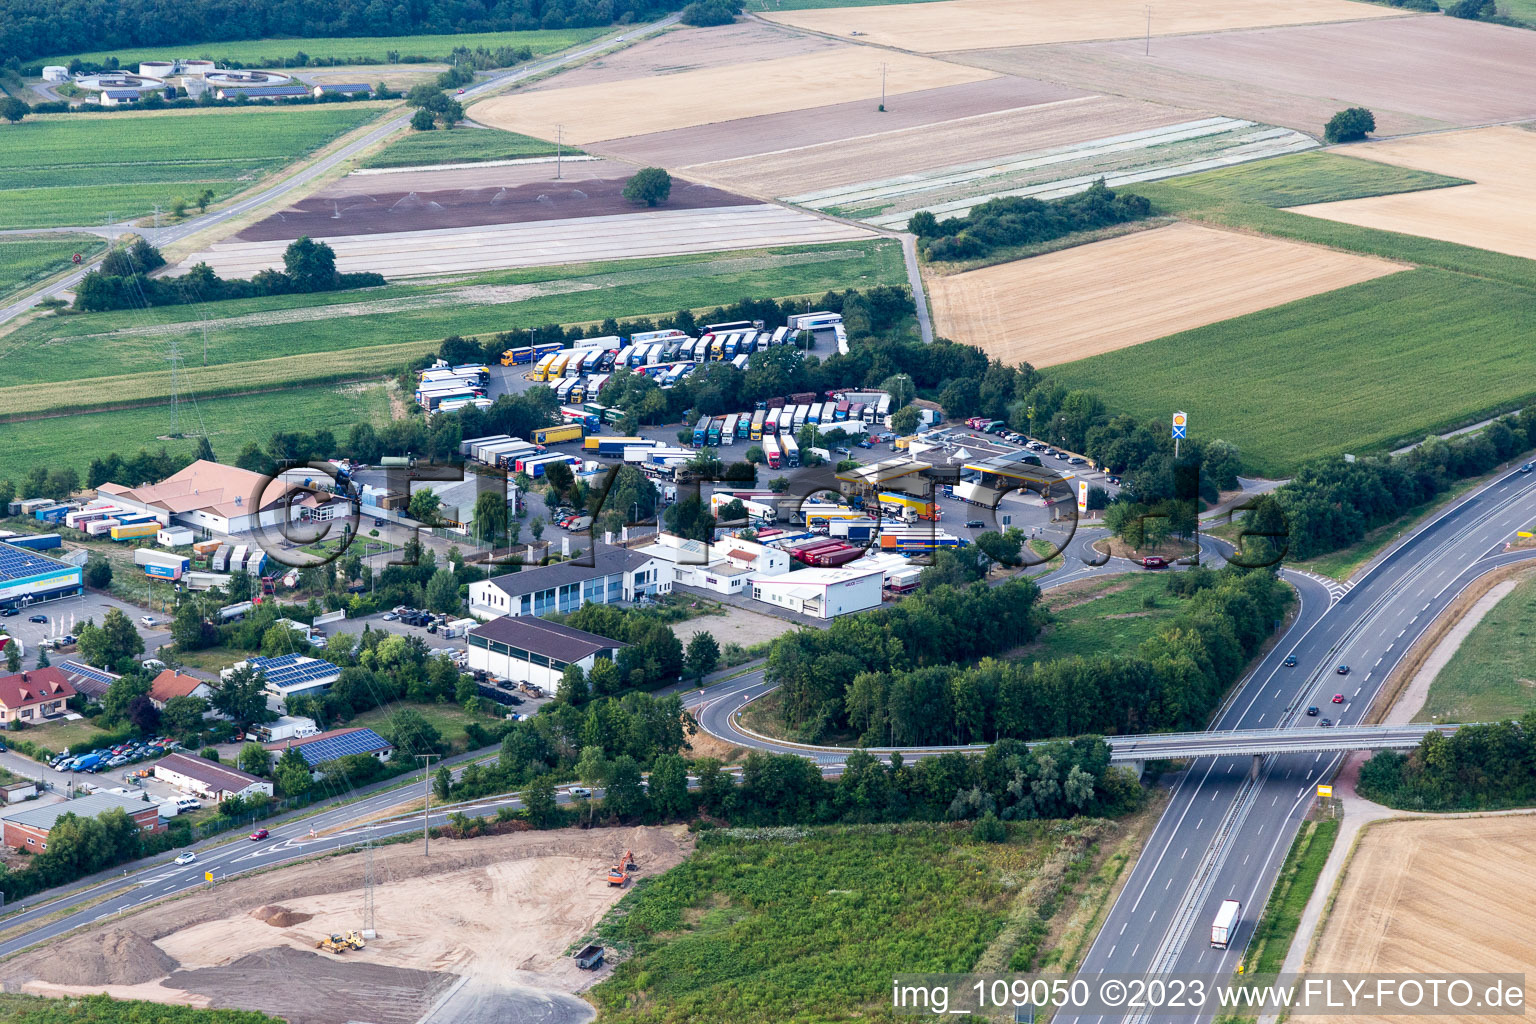 Schwegenheim dans le département Rhénanie-Palatinat, Allemagne vue d'en haut